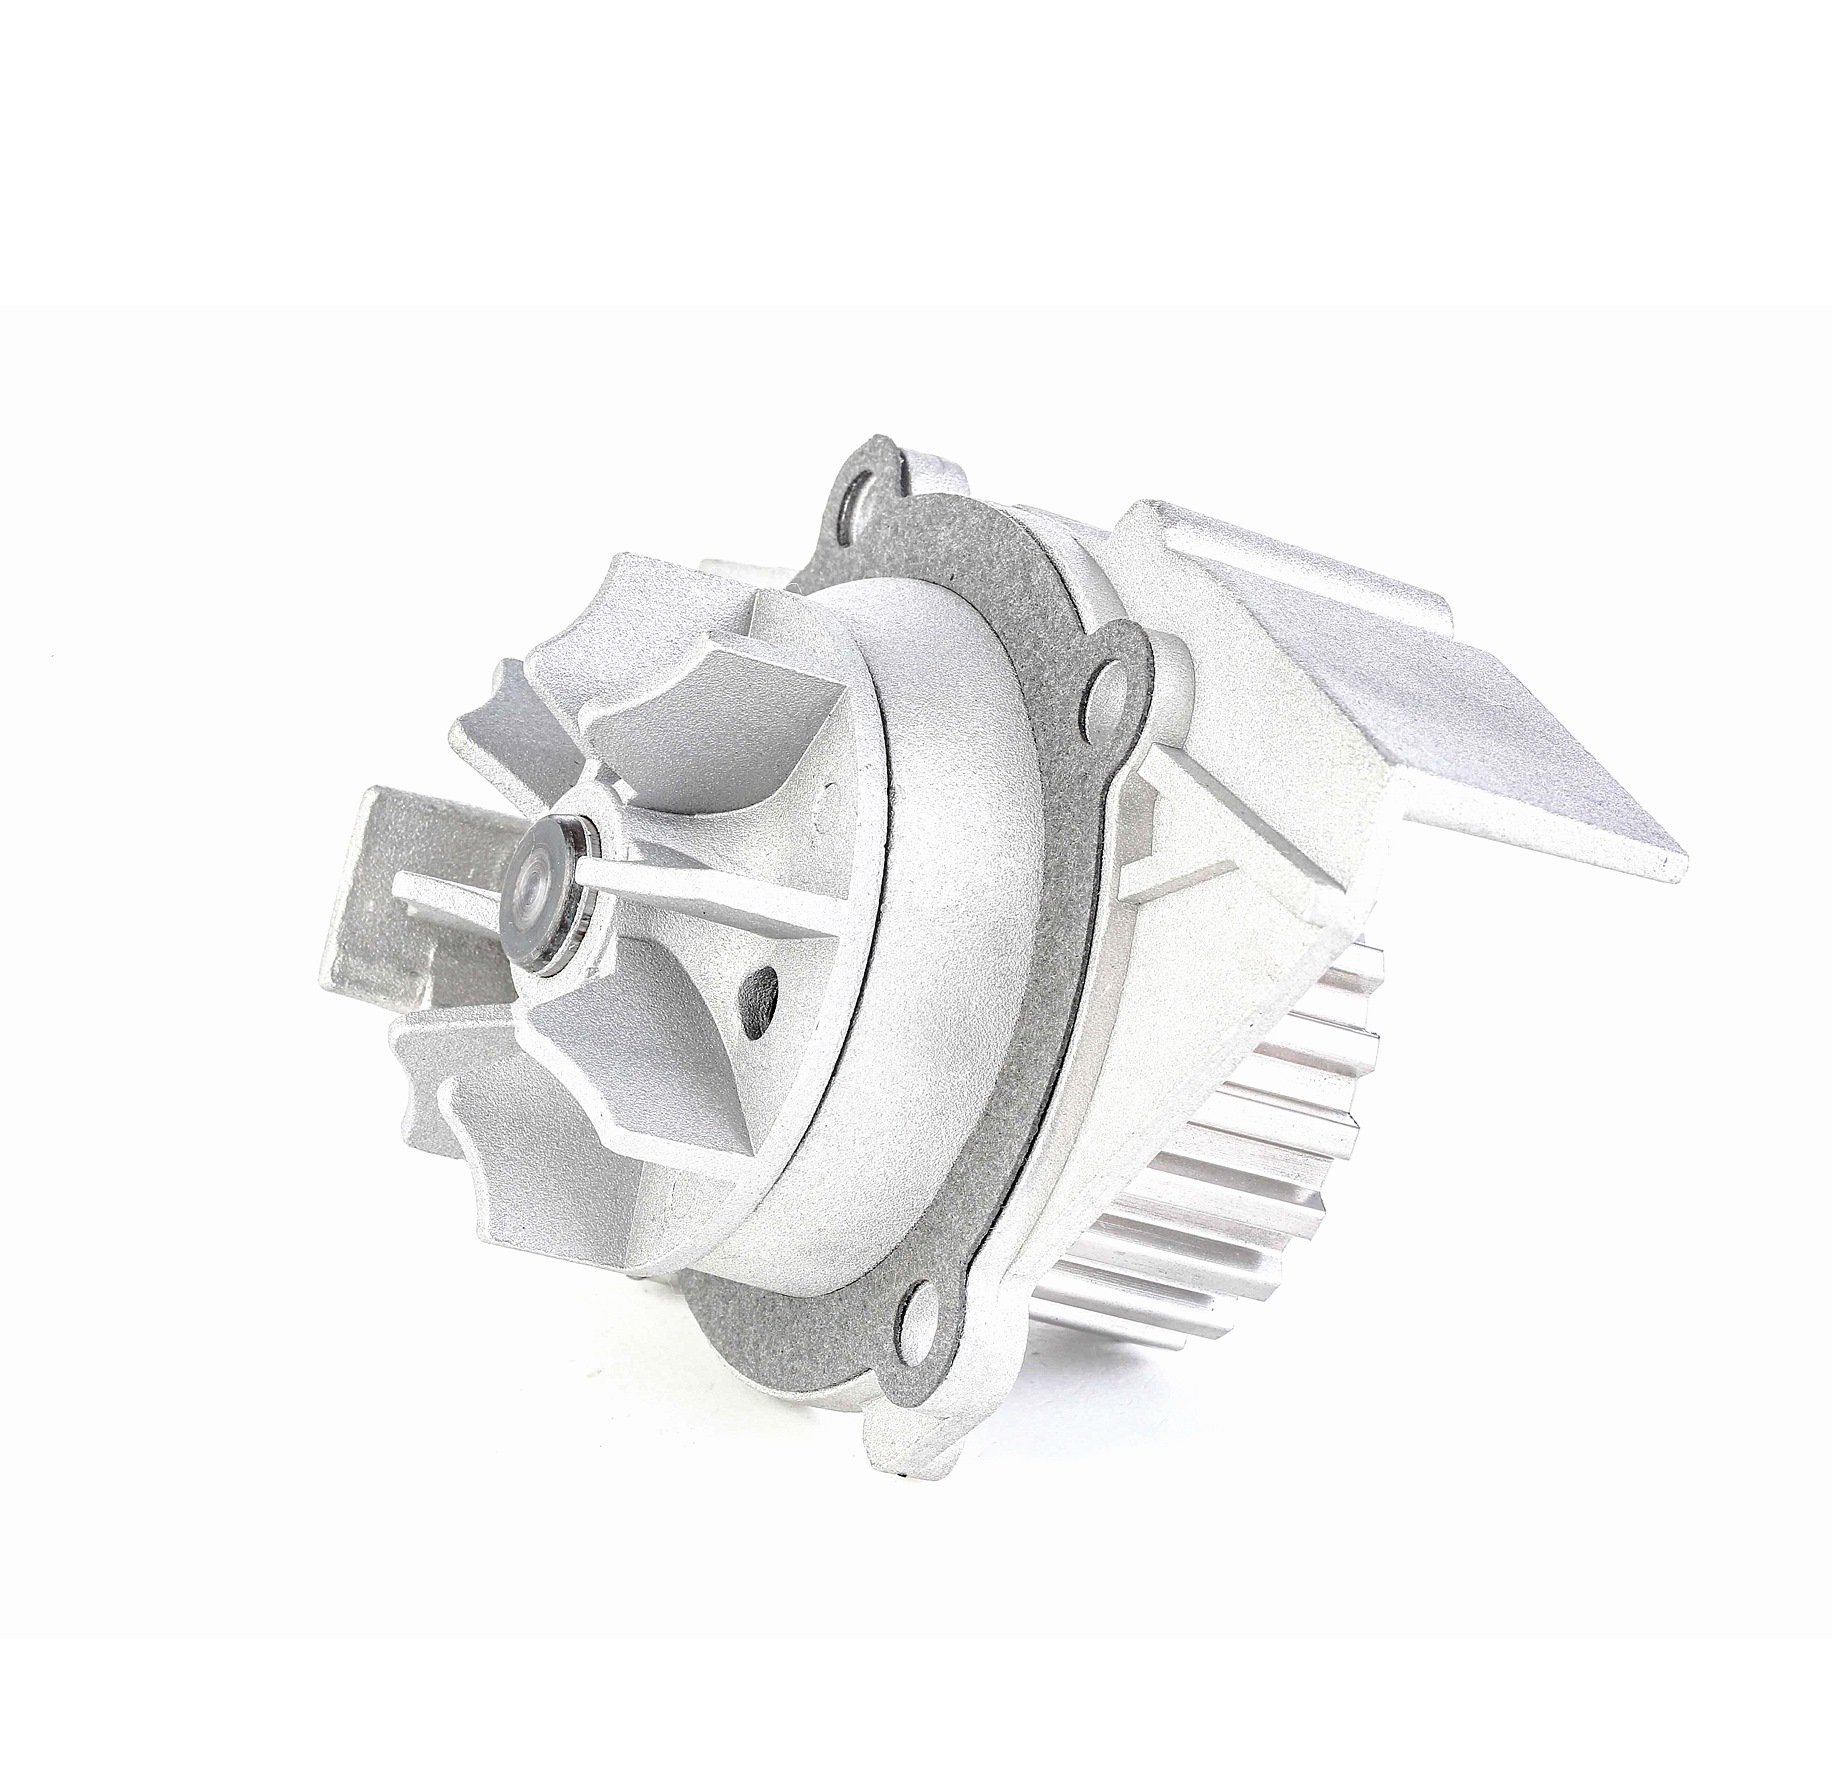 RIDEX 1260W0024 Wasserpumpe Zähnez.: 20, Aluguss, mit Dichtung, mechanisch, Flügelrad aus Metall, Riemenscheiben-Ø: 59 mm, für Zahnriementrieb